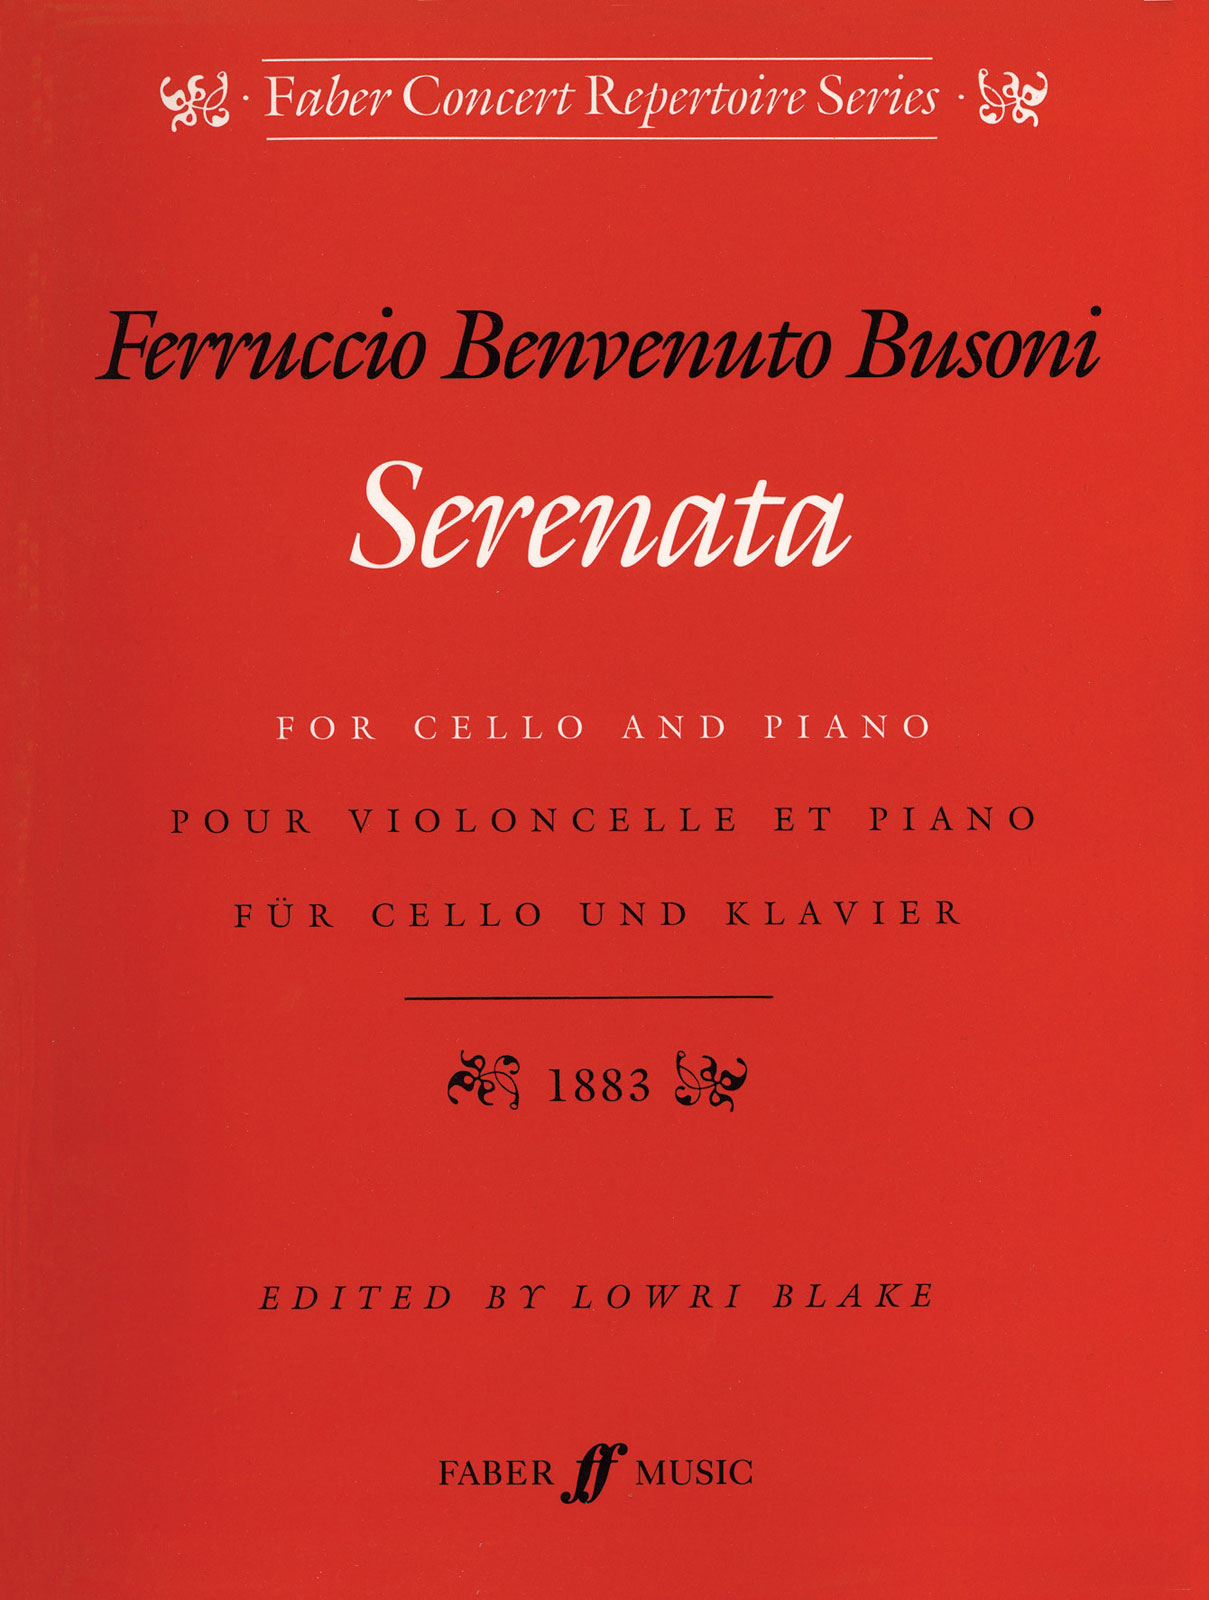 FABER MUSIC BUSONI F. - SERENATA OP.34 - CELLO AND PIANO